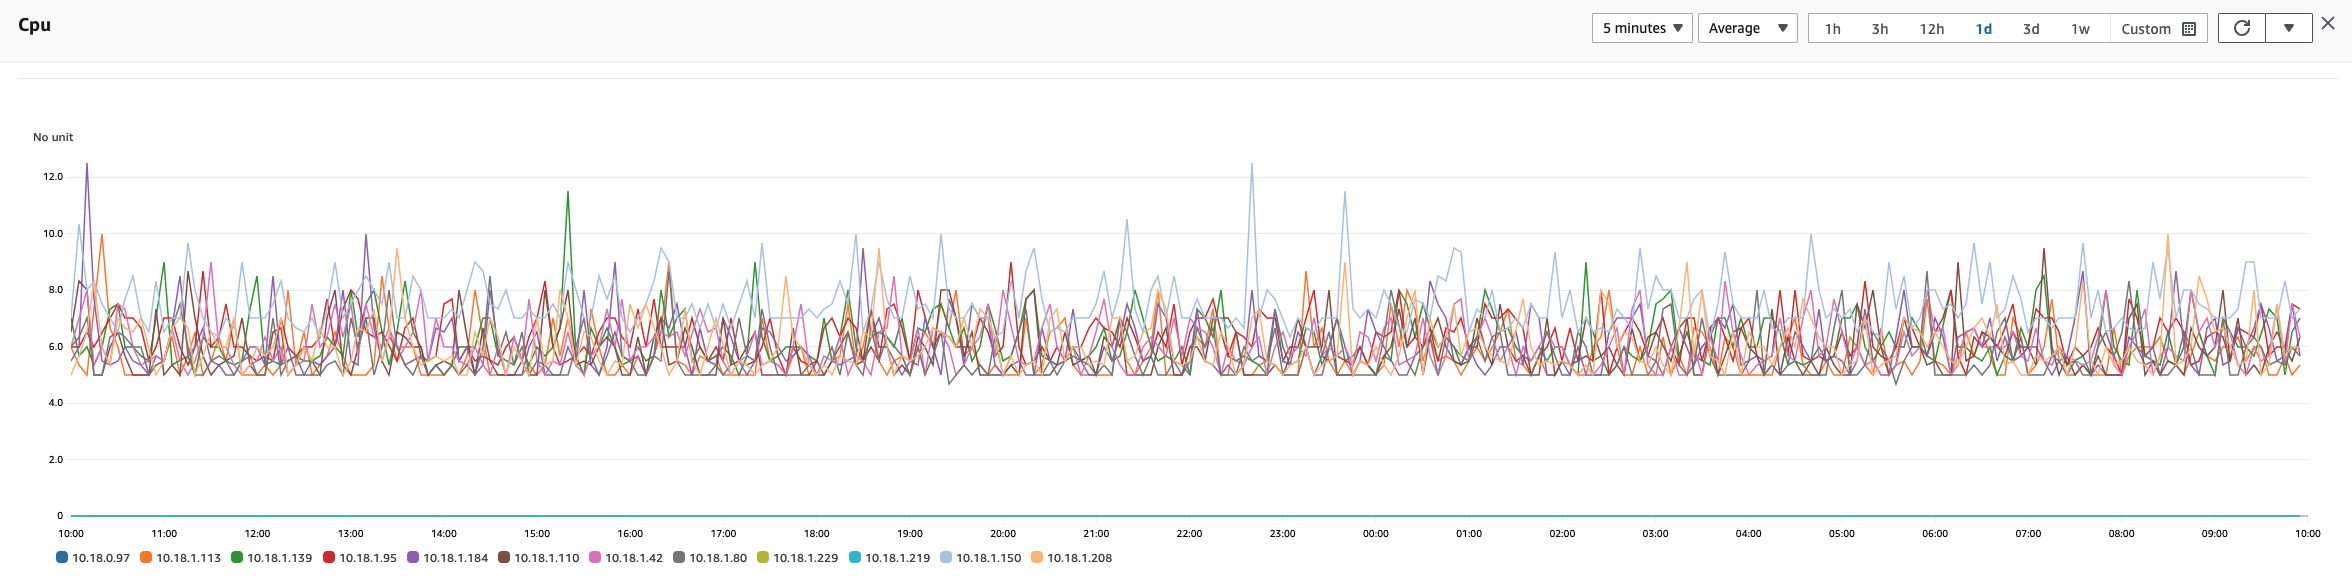 Comparison of CPU spikes in Graviton nodes vs OpenSearch 2.0